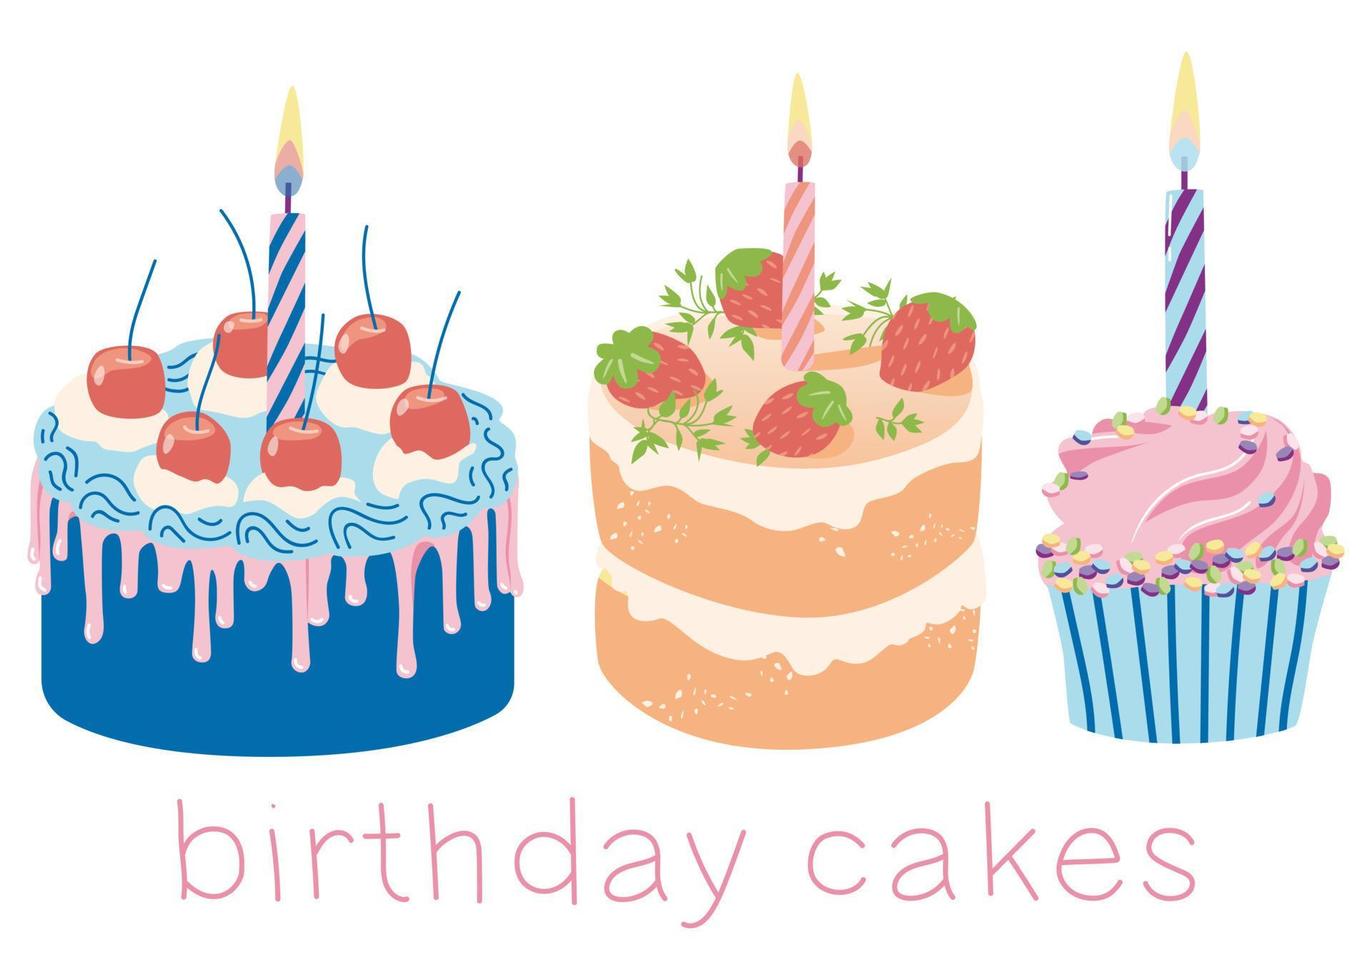 tarjeta de felicitación imagen aislada de un pastel con una vela sobre un fondo blanco vector